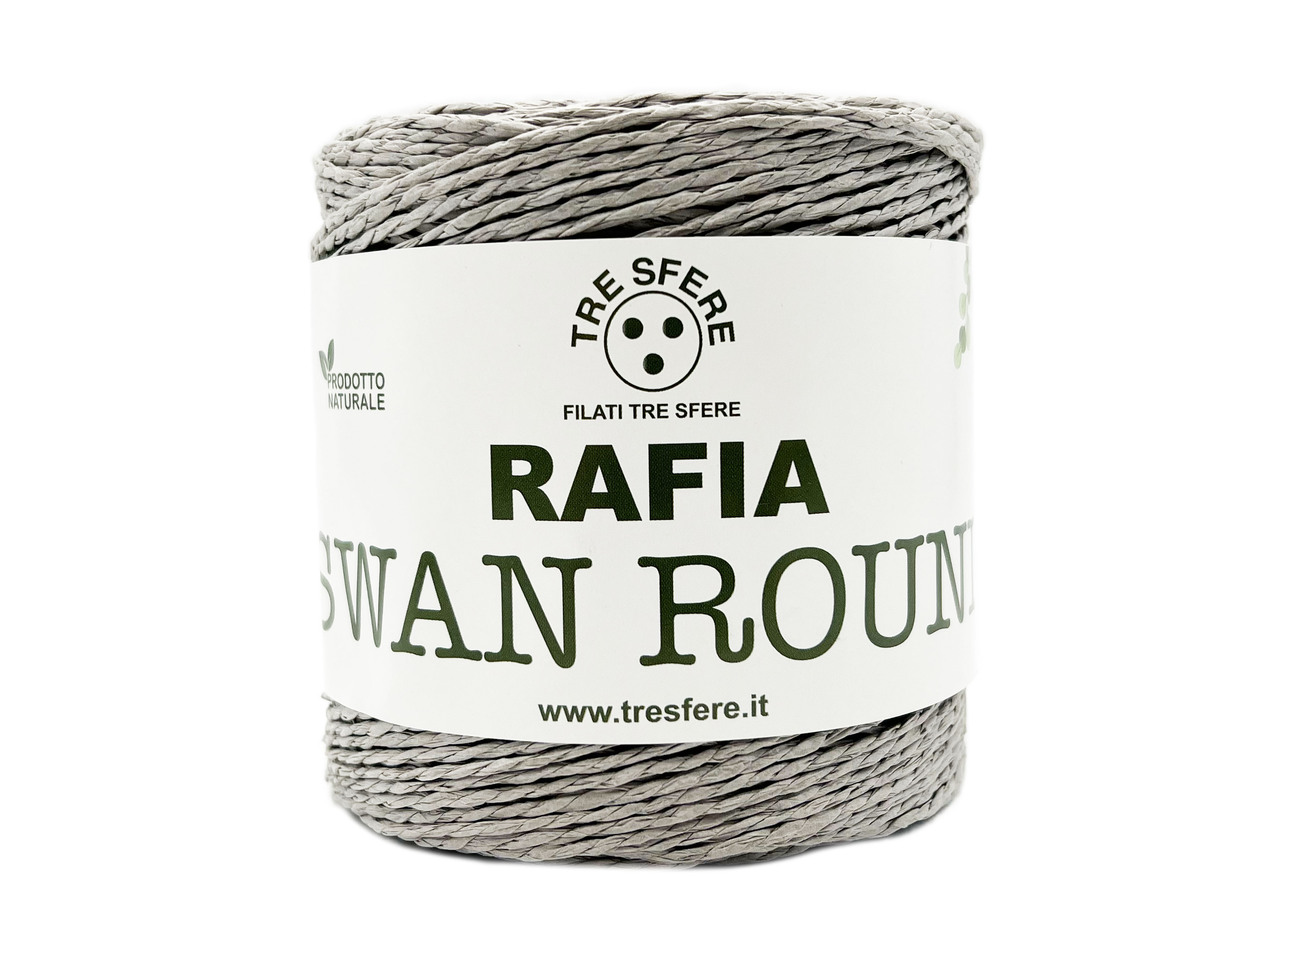 RAFIA SWAN ROUND  150 grammi - GRIGIO -